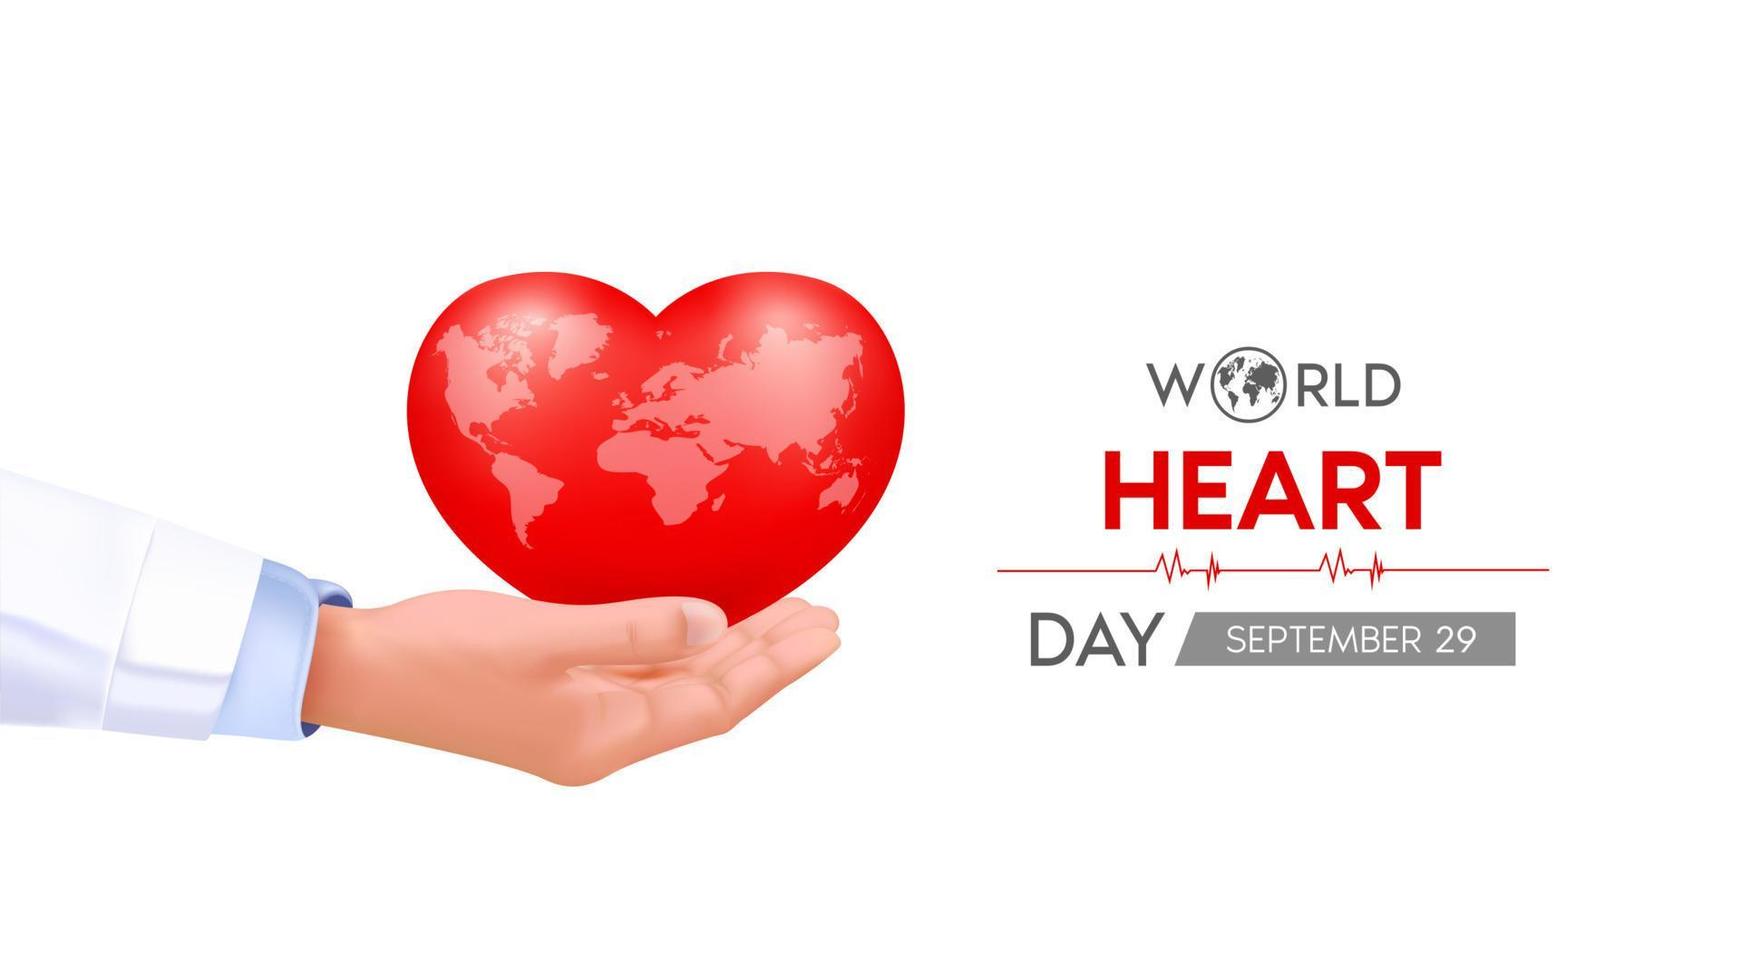 dia mundial do coração. mão de médico segurando um coração vermelho com mapa-múndi branco. bandeira abstrata do fundo do batimento cardíaco, onda do coração. ilustração em vetor 3D.